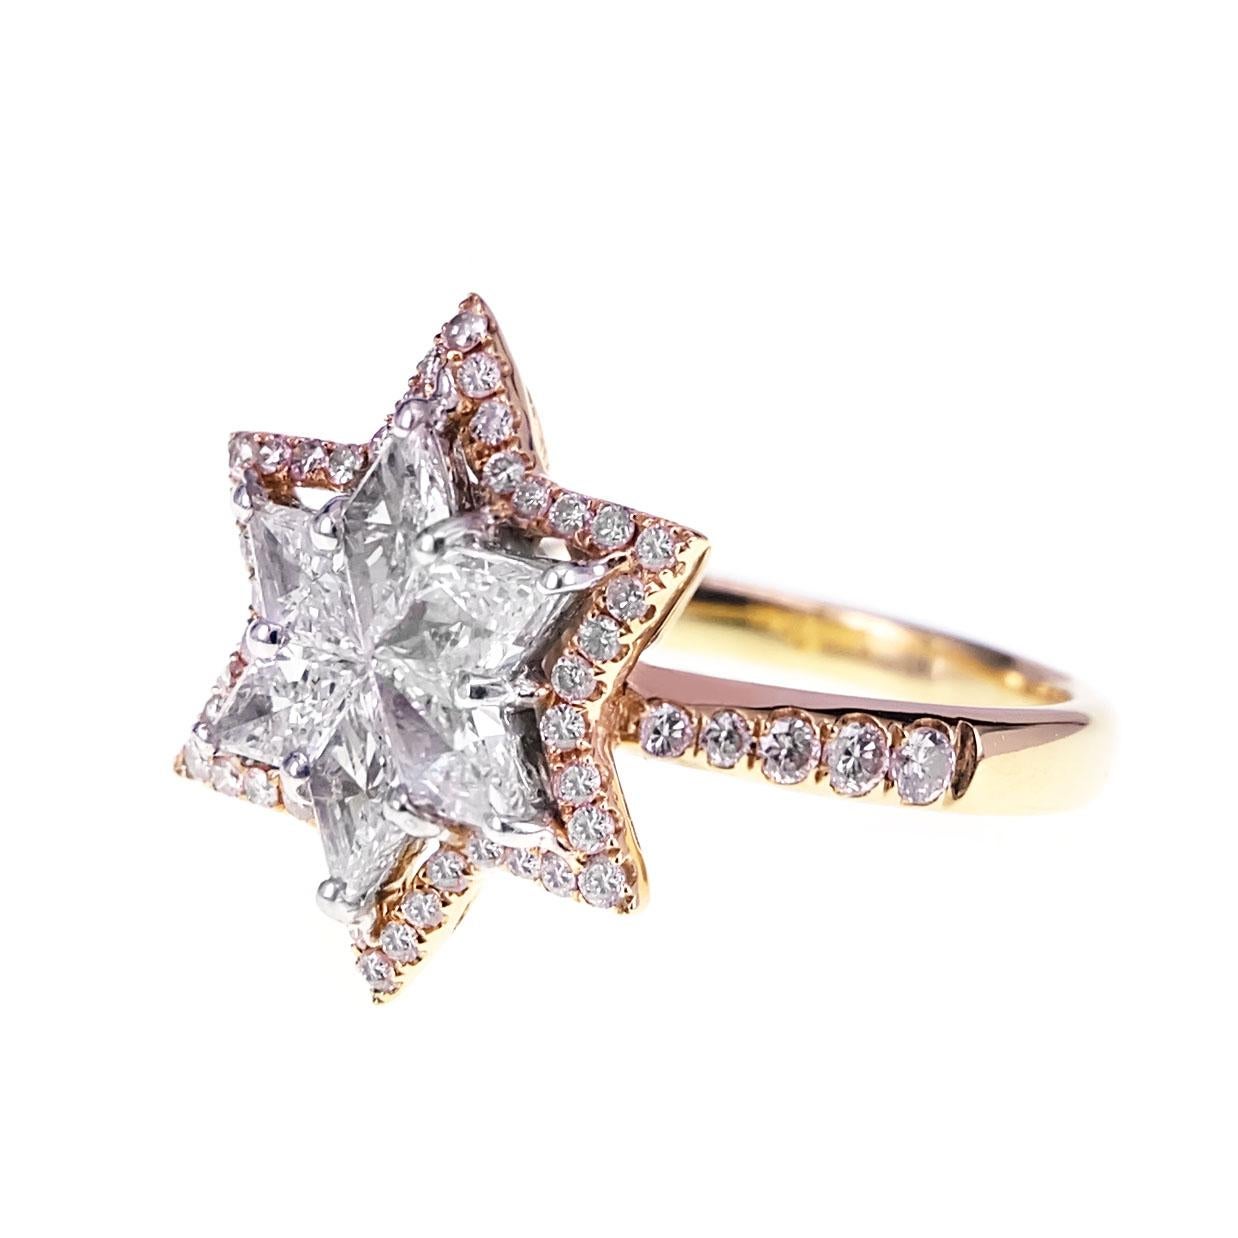 0.88 Karat eines sternförmigen Diamanten und 0,34 Karat eines pinkfarbenen Argyle-Diamanten sind in diesem wunderschönen Verlobungsring gefasst. Der Ring eignet sich perfekt für Brautveranstaltungen und als Hochzeitsgeschenk.  Die Einzelheiten des